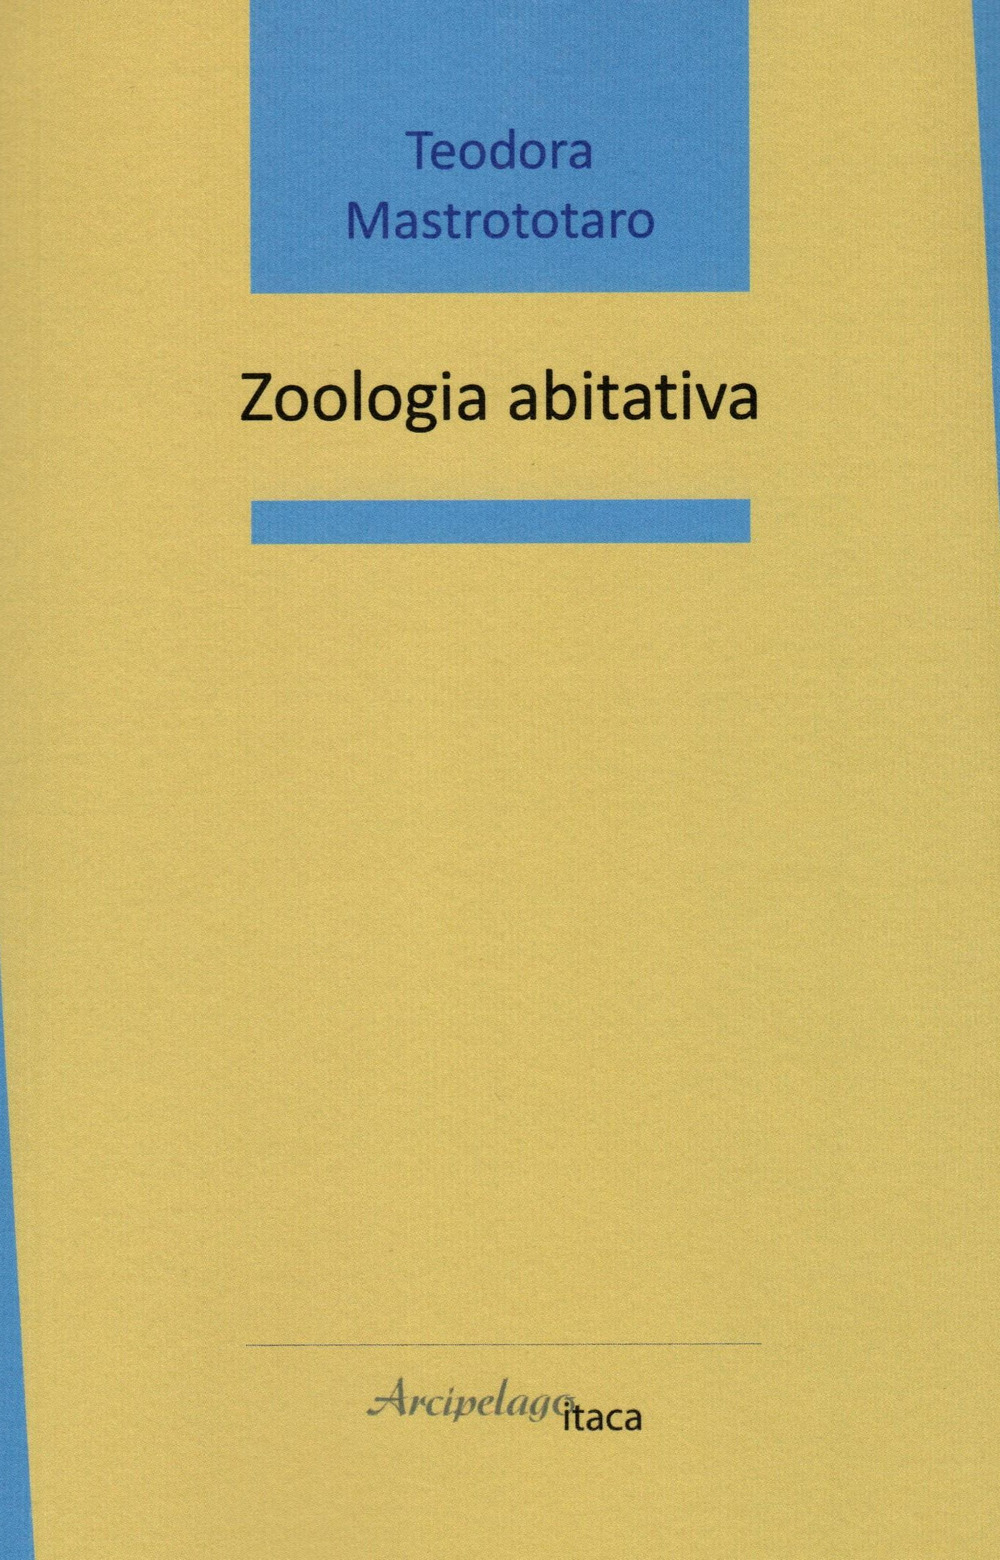 Zoologia abitativa